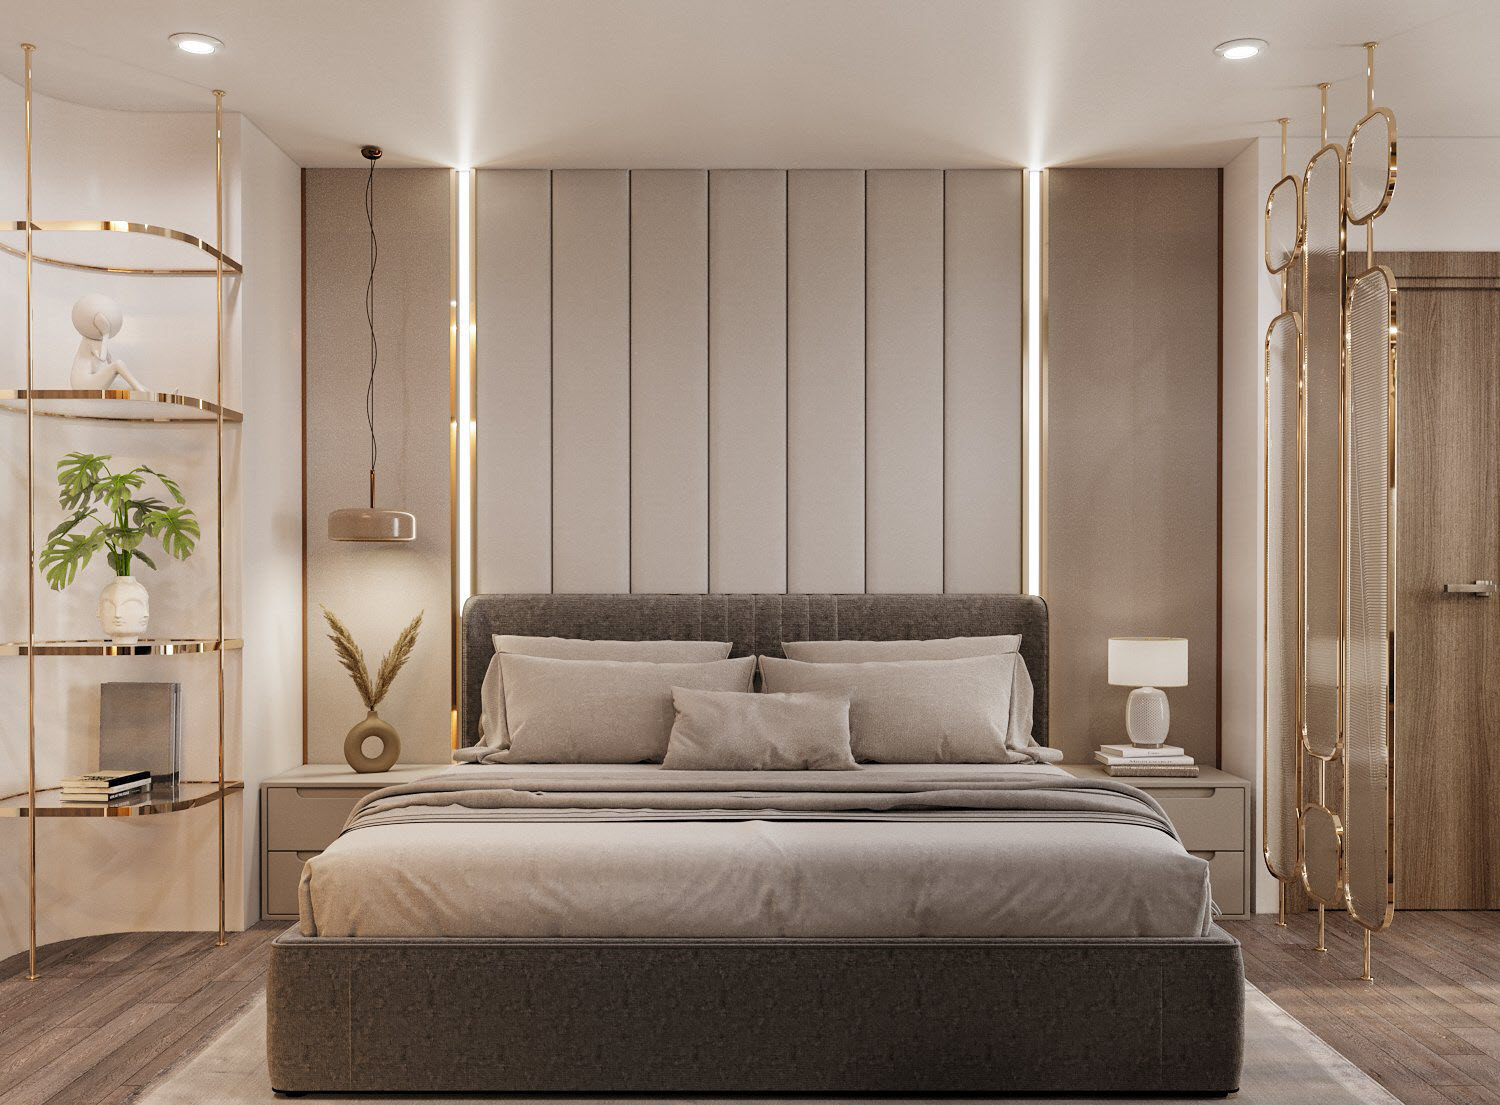 Phòng ngủ master sang chảnh dành cho chủ nhân căn hộ 150m2. Giá kệ và vách ngăn khung kim loại mạ đồng sáng bóng sang trọng.